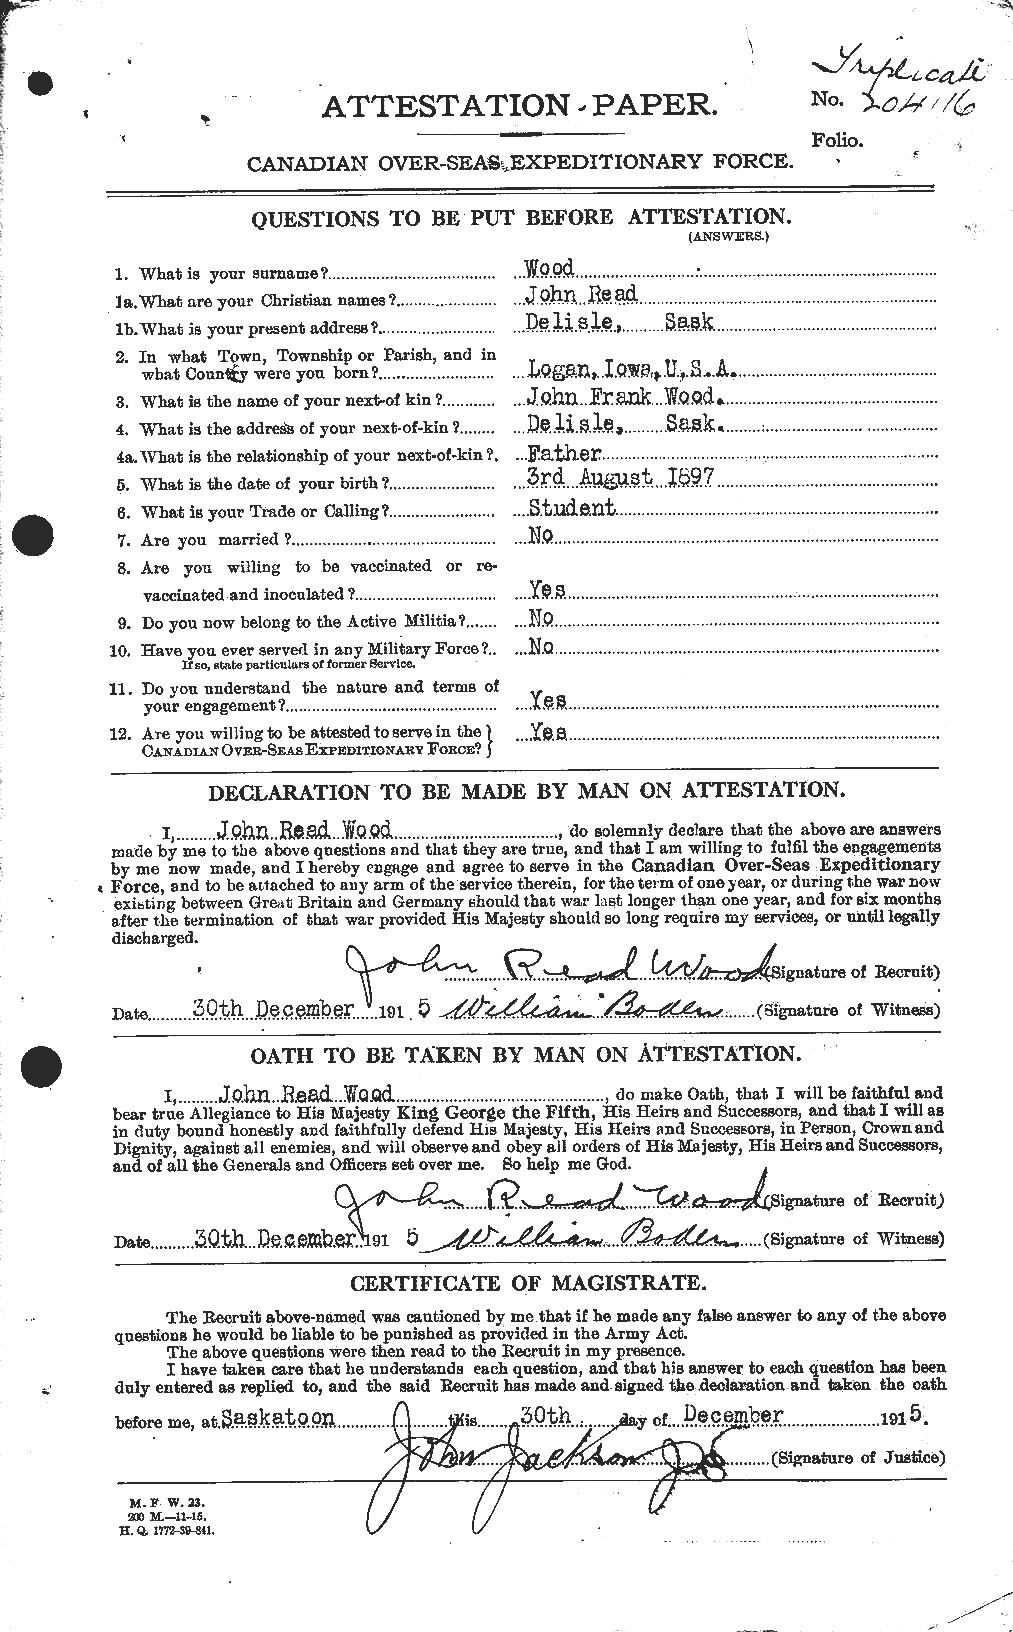 Dossiers du Personnel de la Première Guerre mondiale - CEC 684598a